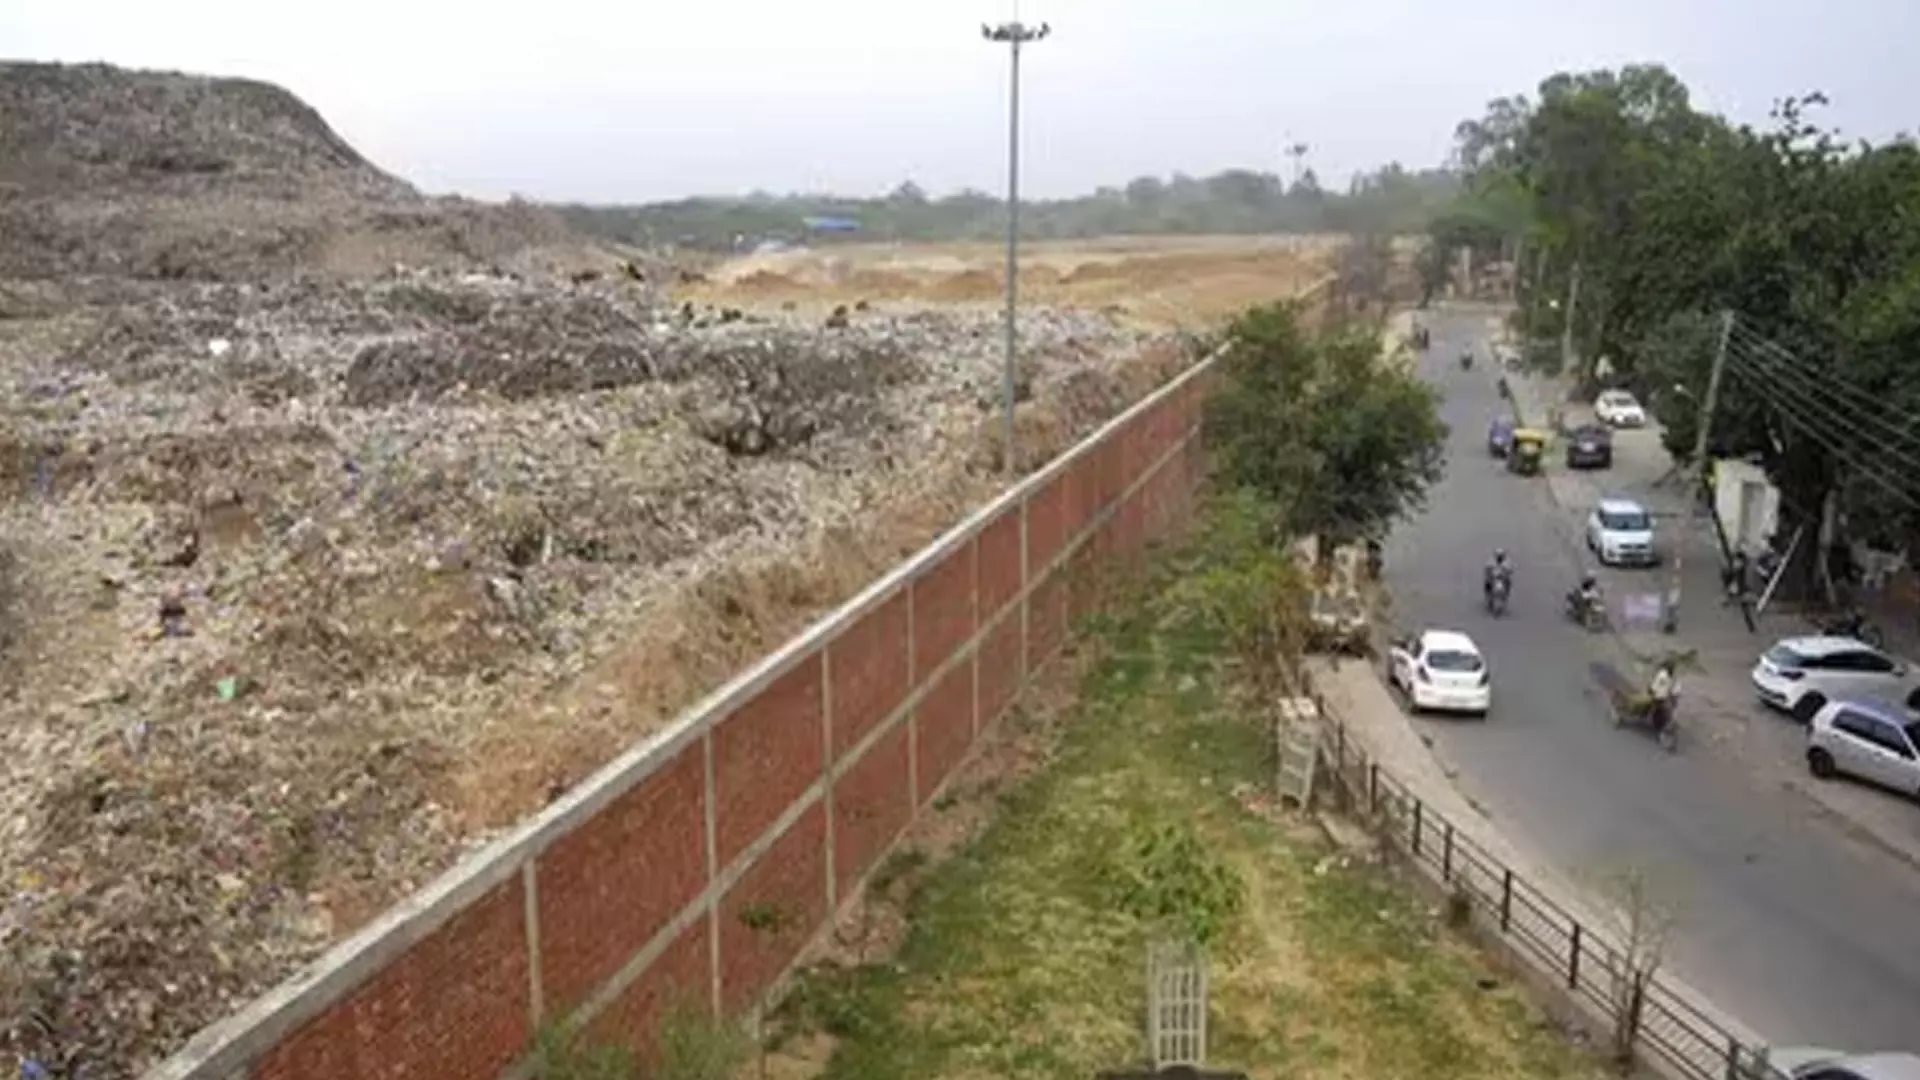 CHANDIGAD: चंडीगढ़ नगर निगम डंपिंग ग्राउंड को पेड़ों से सुंदर बनाने के लिए तैयार